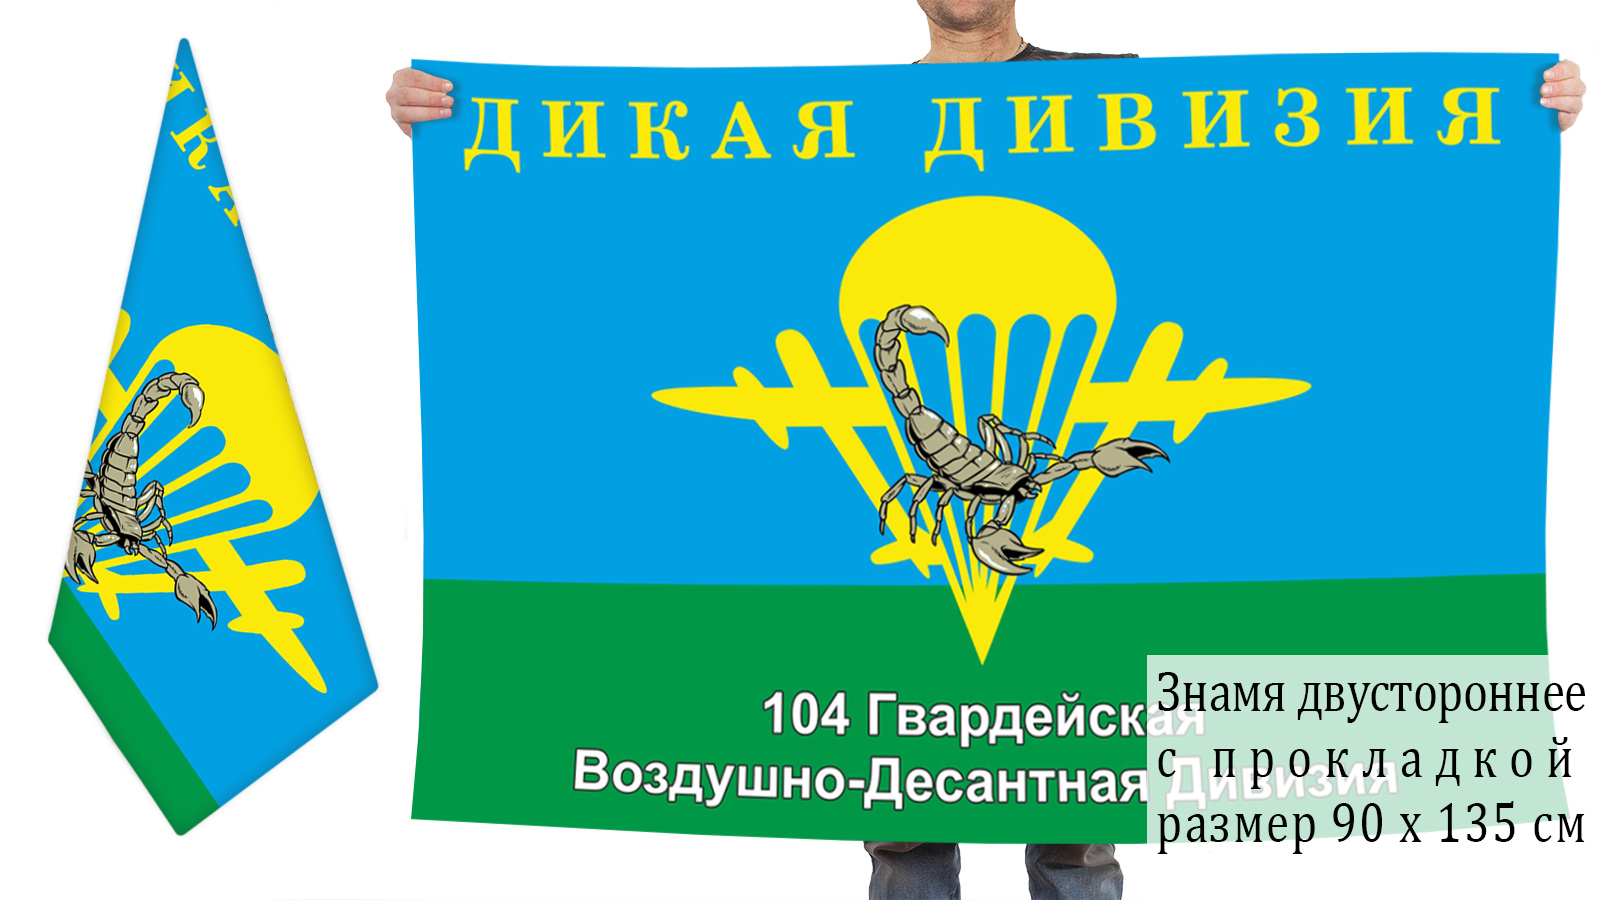 Двухсторонний флаг «Дикая дивизия» 104 гв. воздушно-десантной дивизии